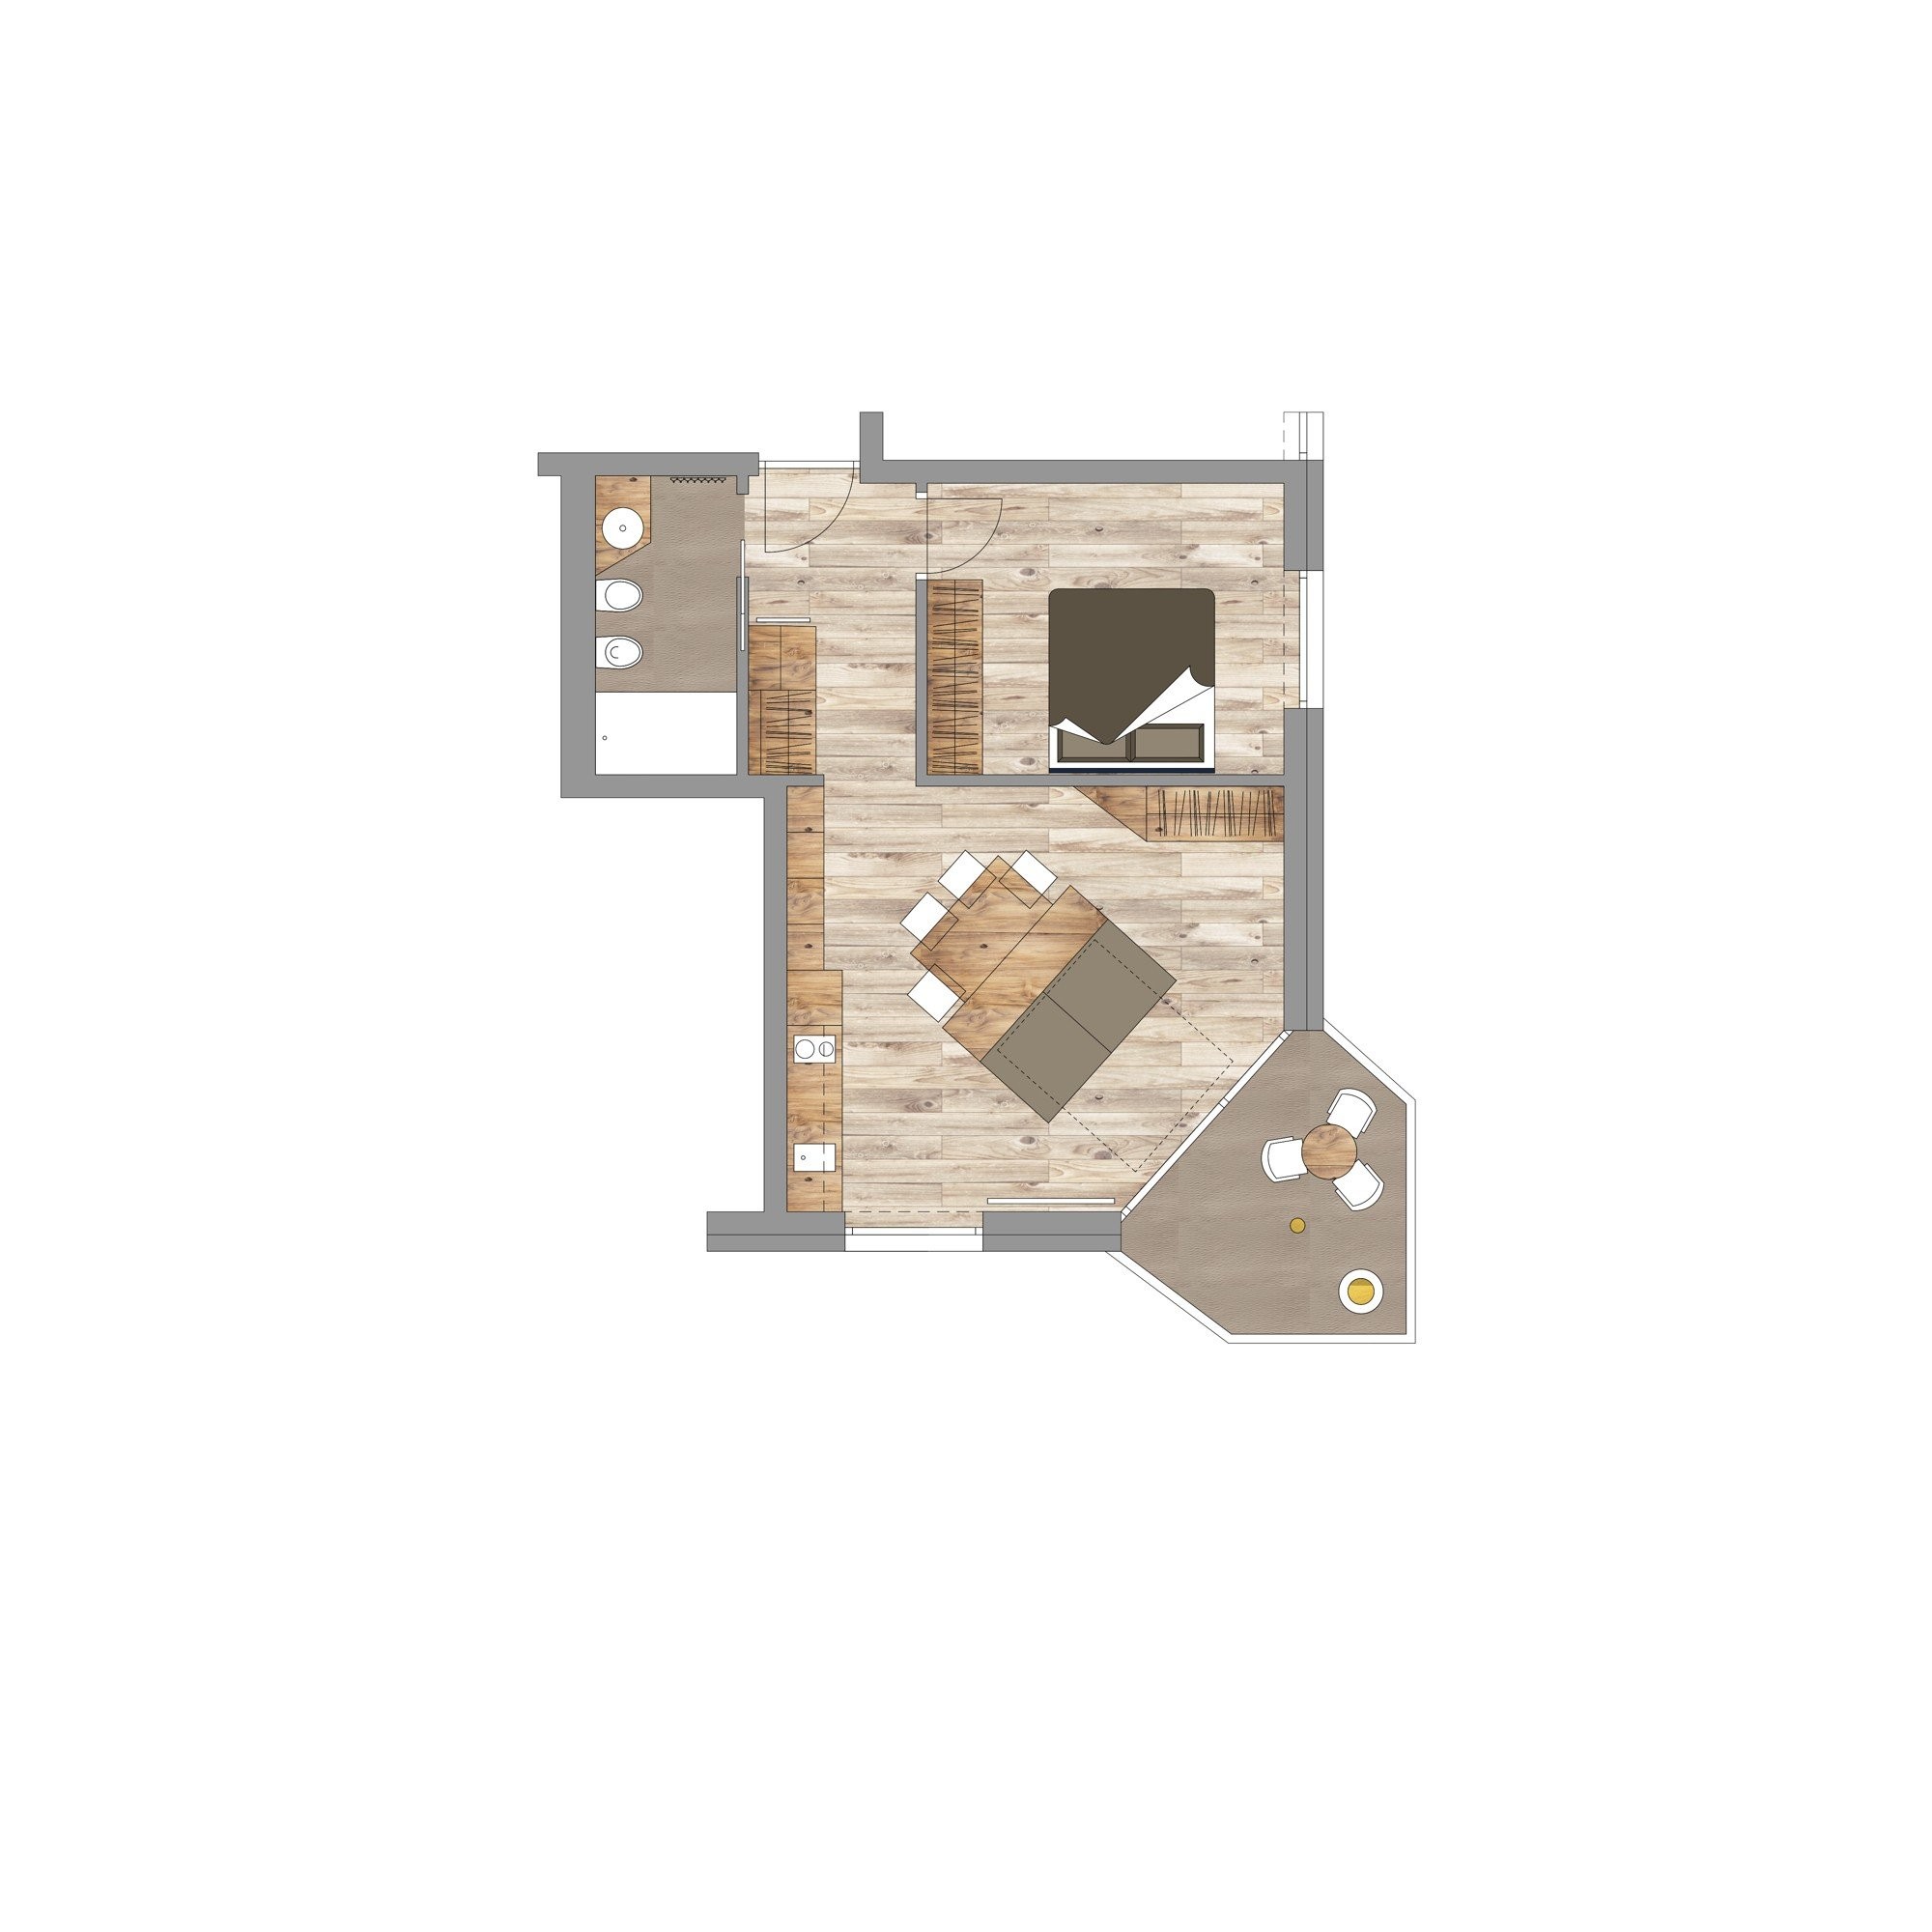 A3 - POST MOUNTAIN - Zweizimmerwohnung mit hochwertiger Ausstattung im dritten Obergeschoss